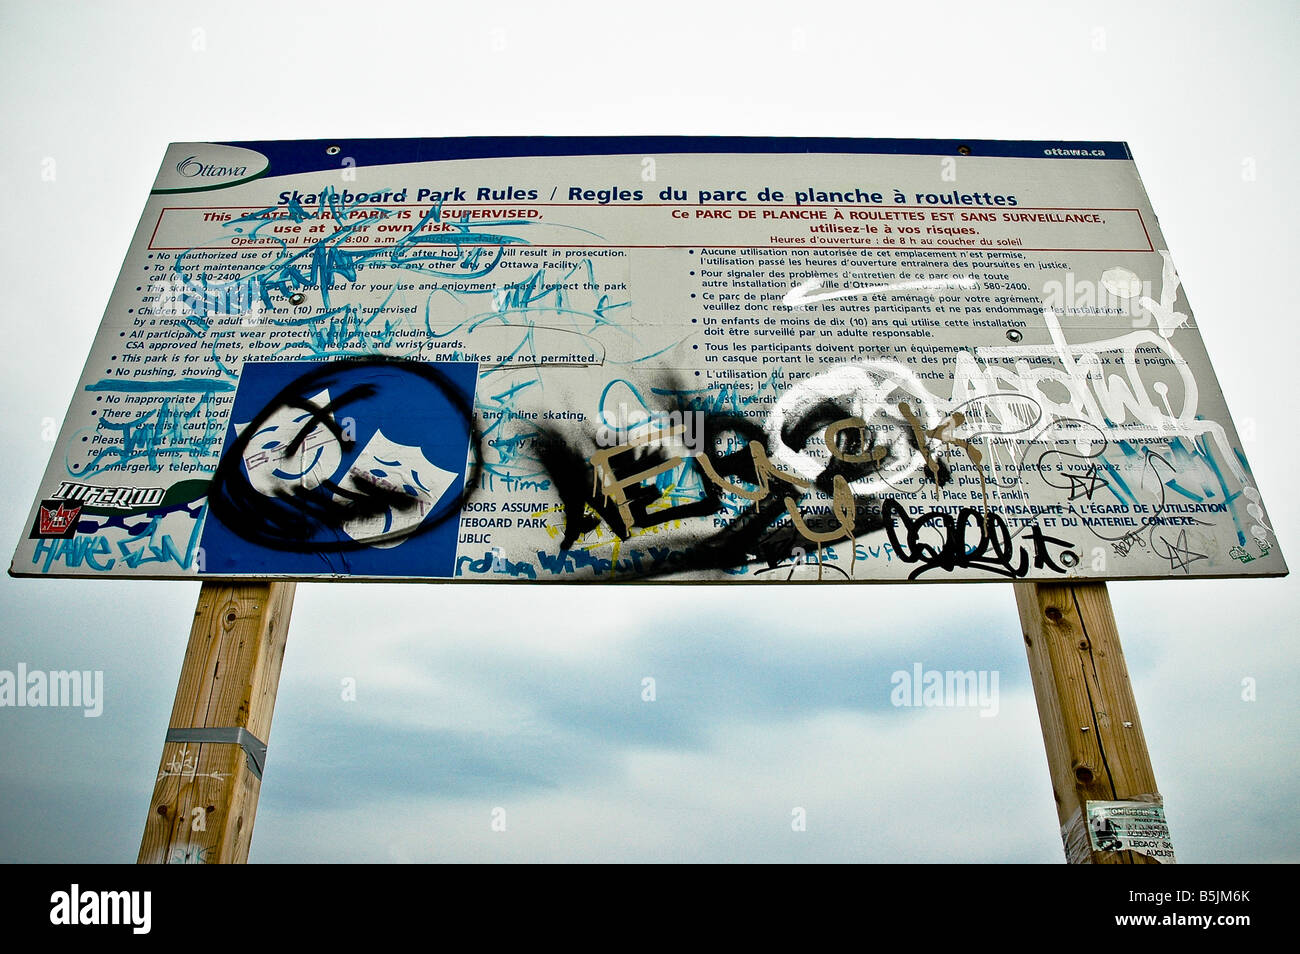 El parque de skate board Graffitied regla. Foto de stock